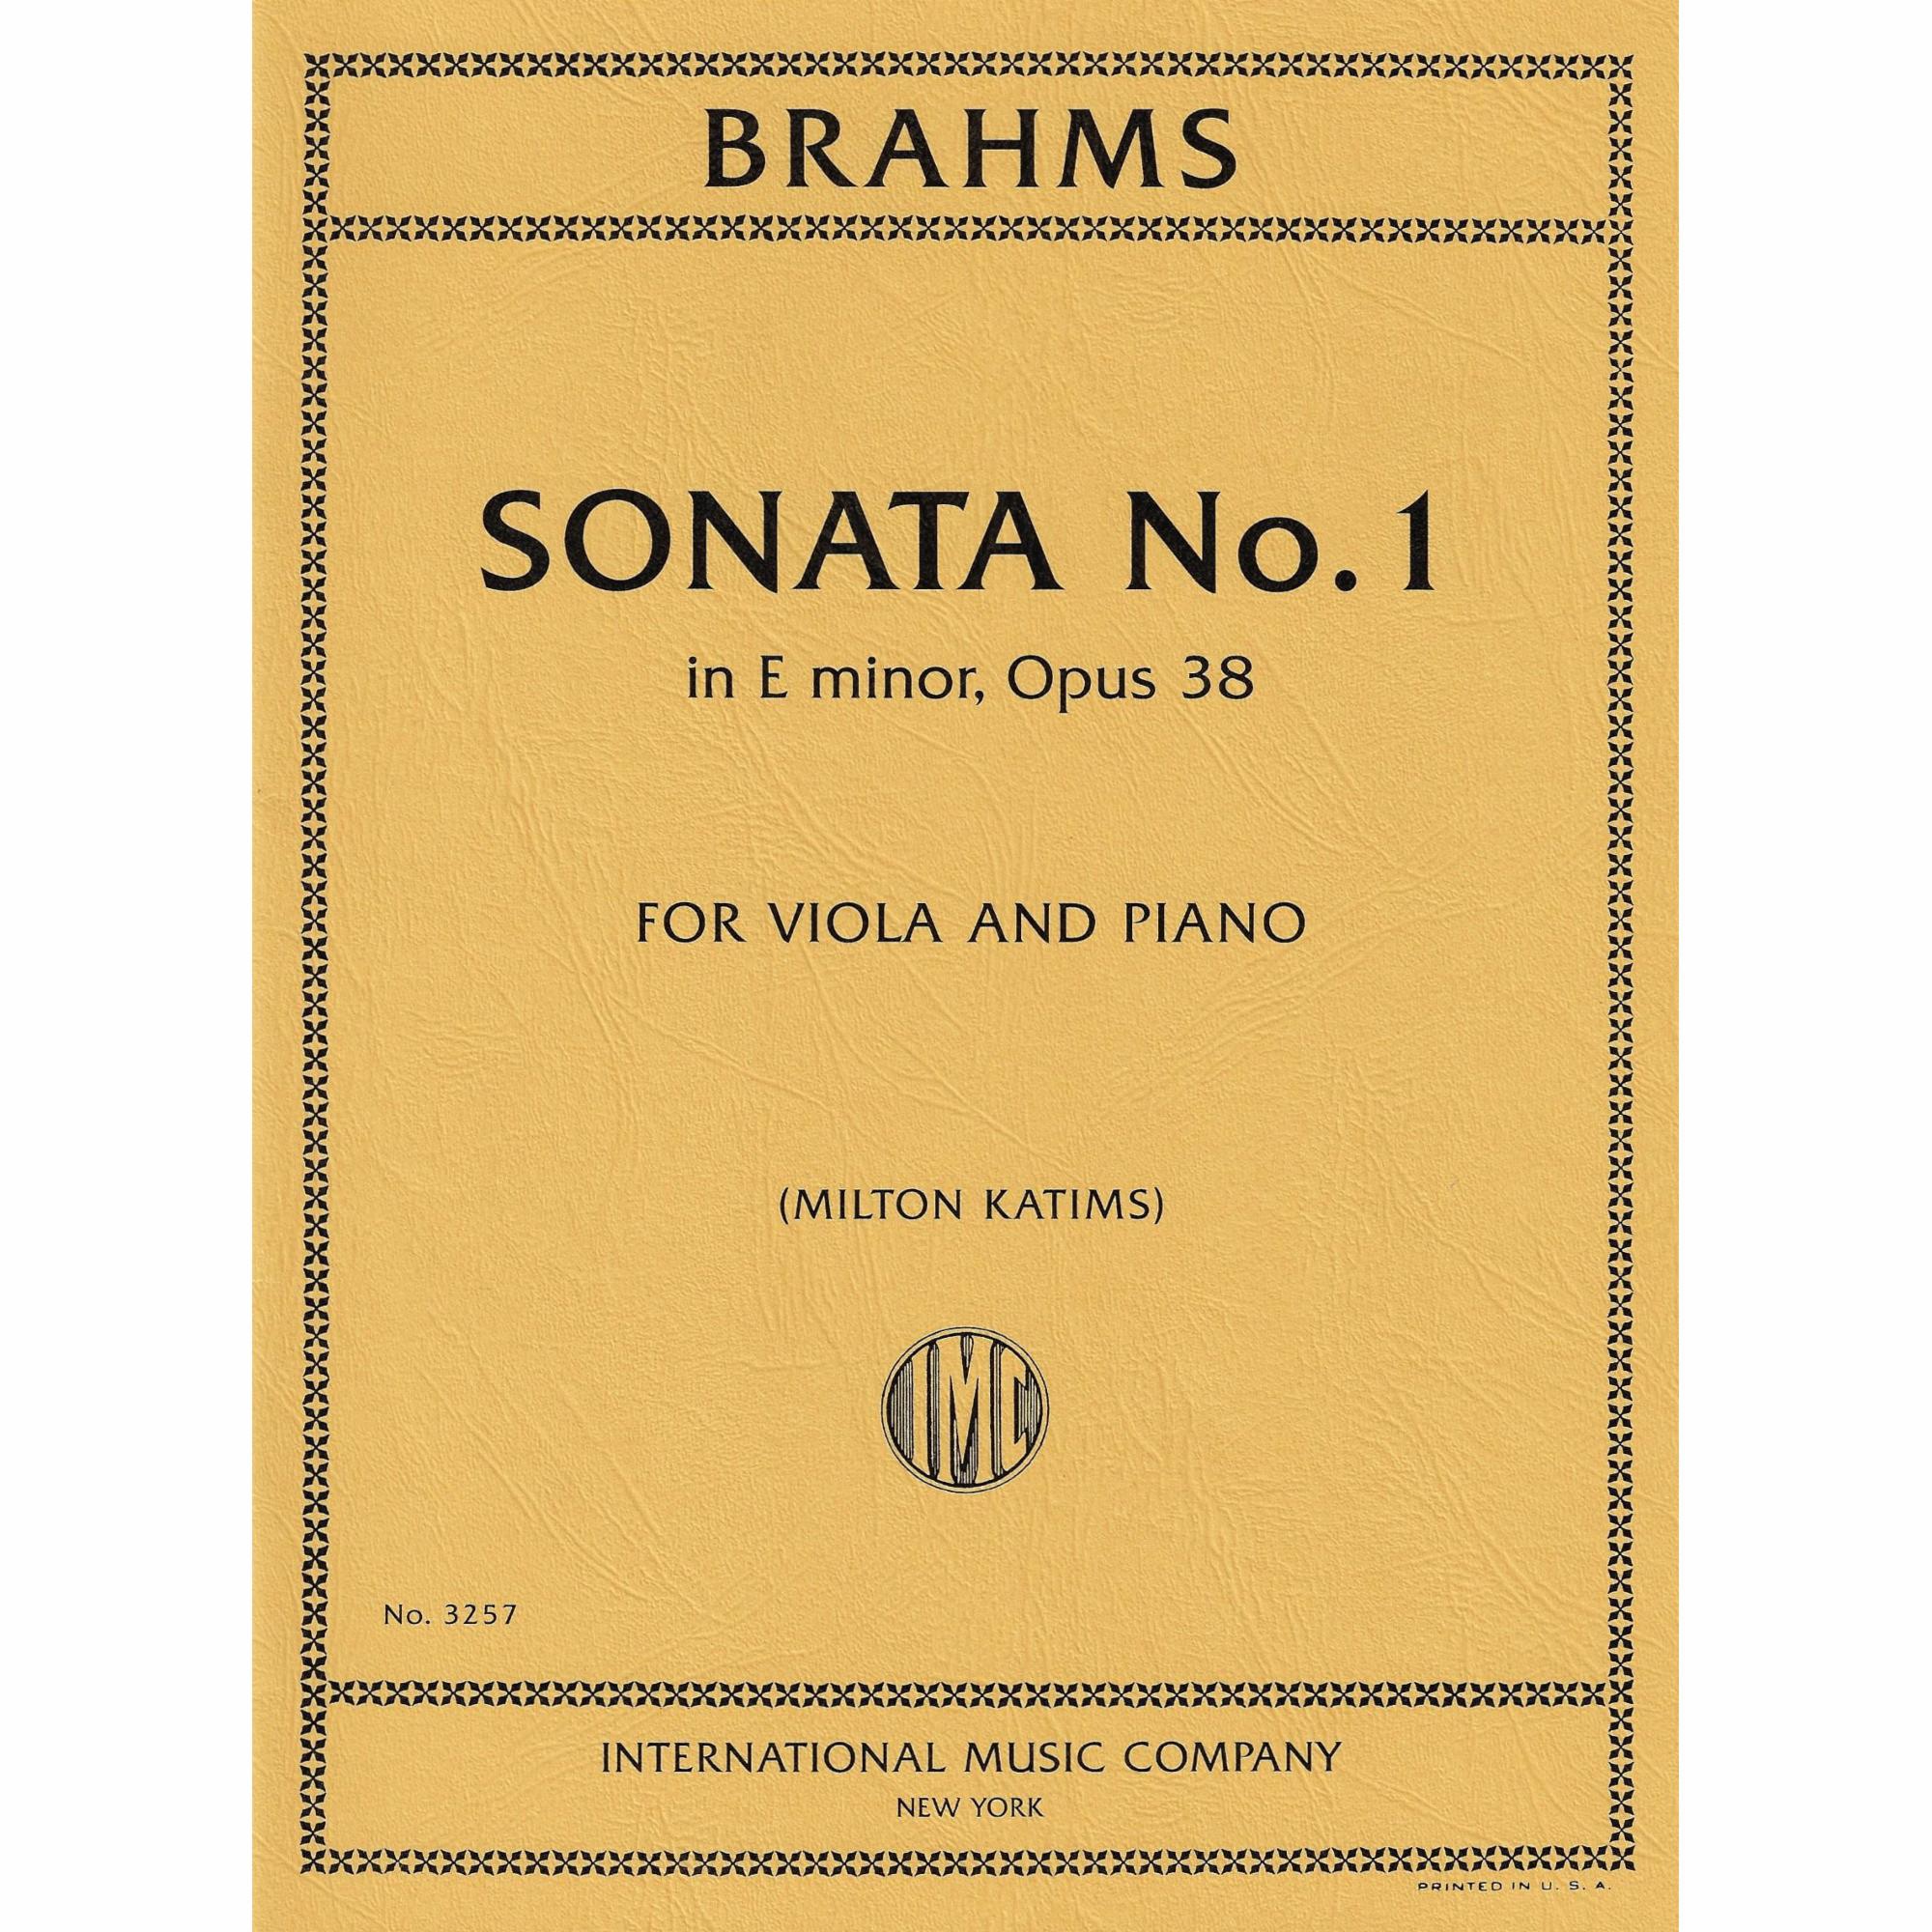 Viola Sonata in E Minor, Op. 38